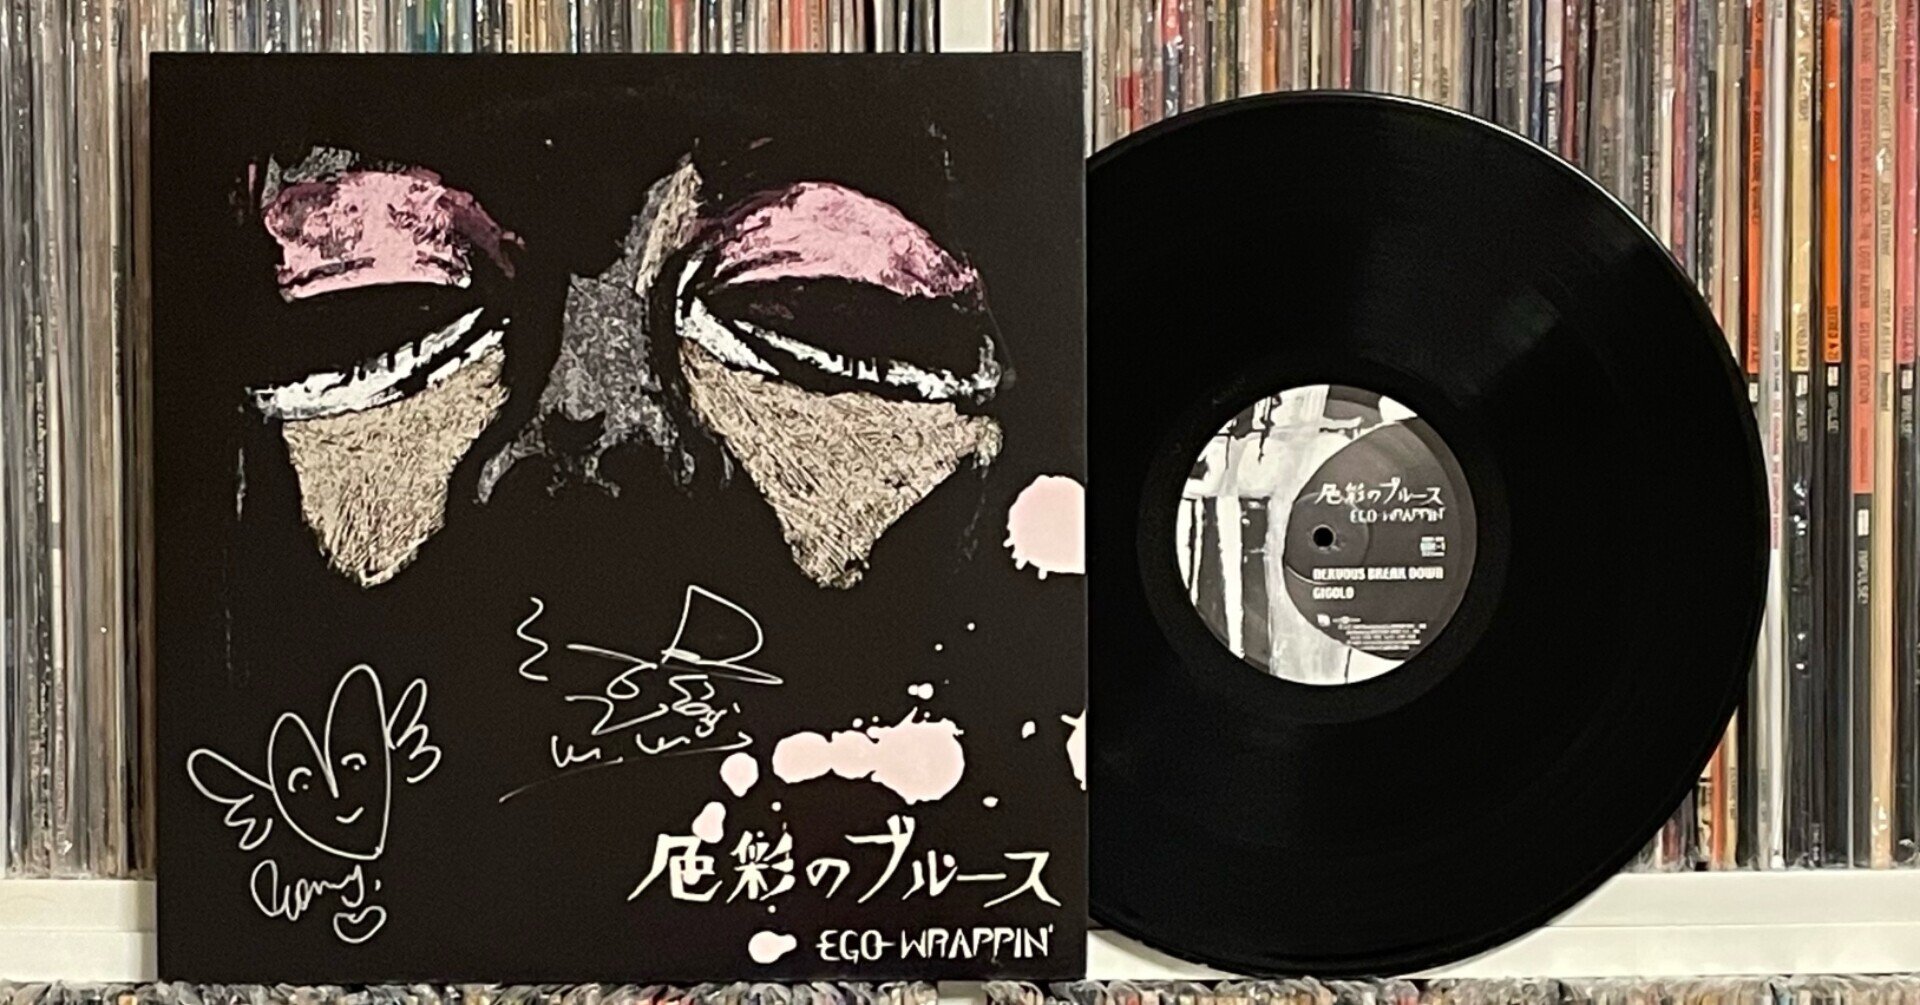 希少】ego-wrappin' エゴラッピン レコード アナログ版 セット 直販 